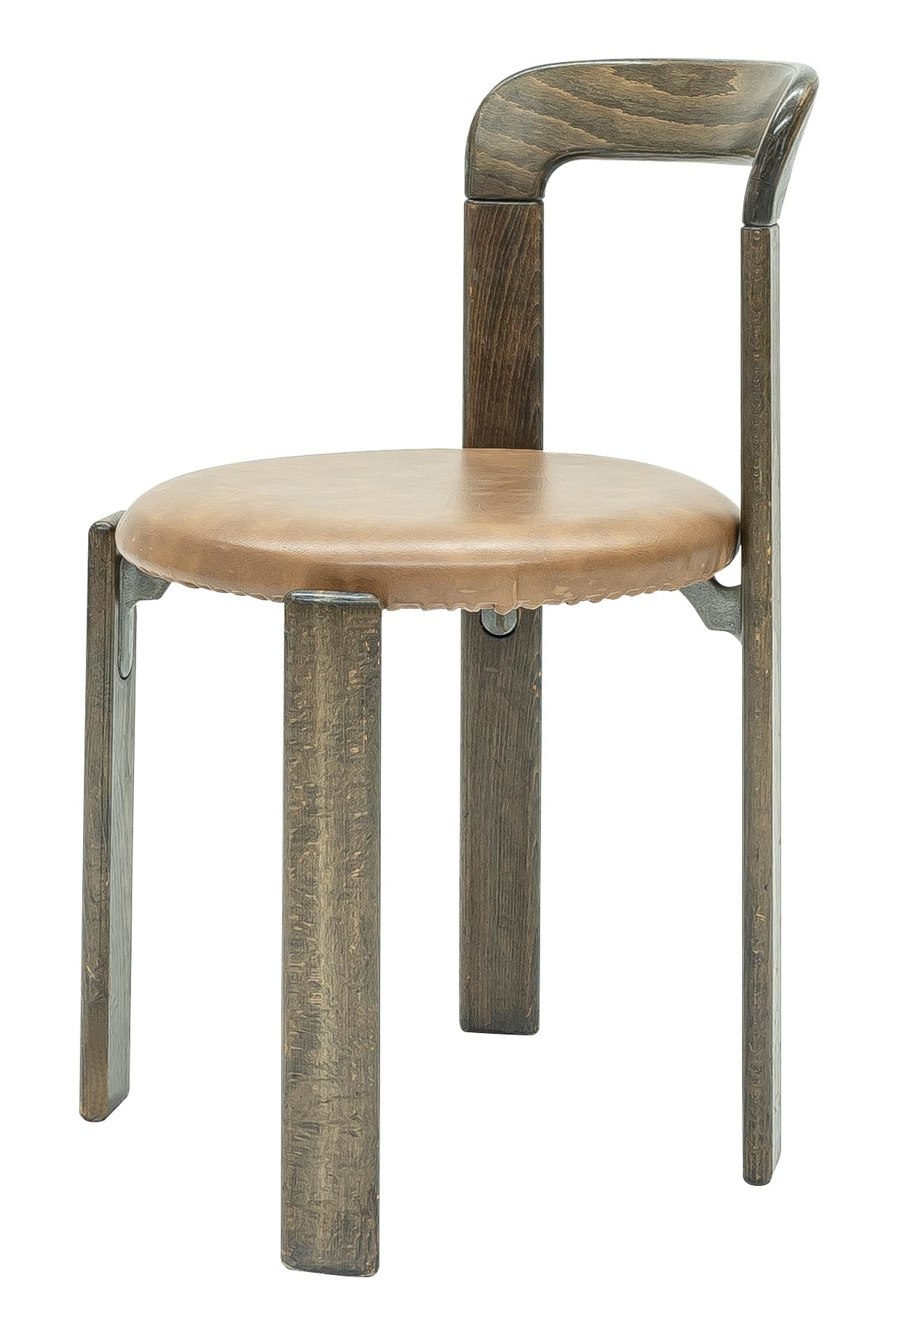 Swiss chair design through the decades | Diseño